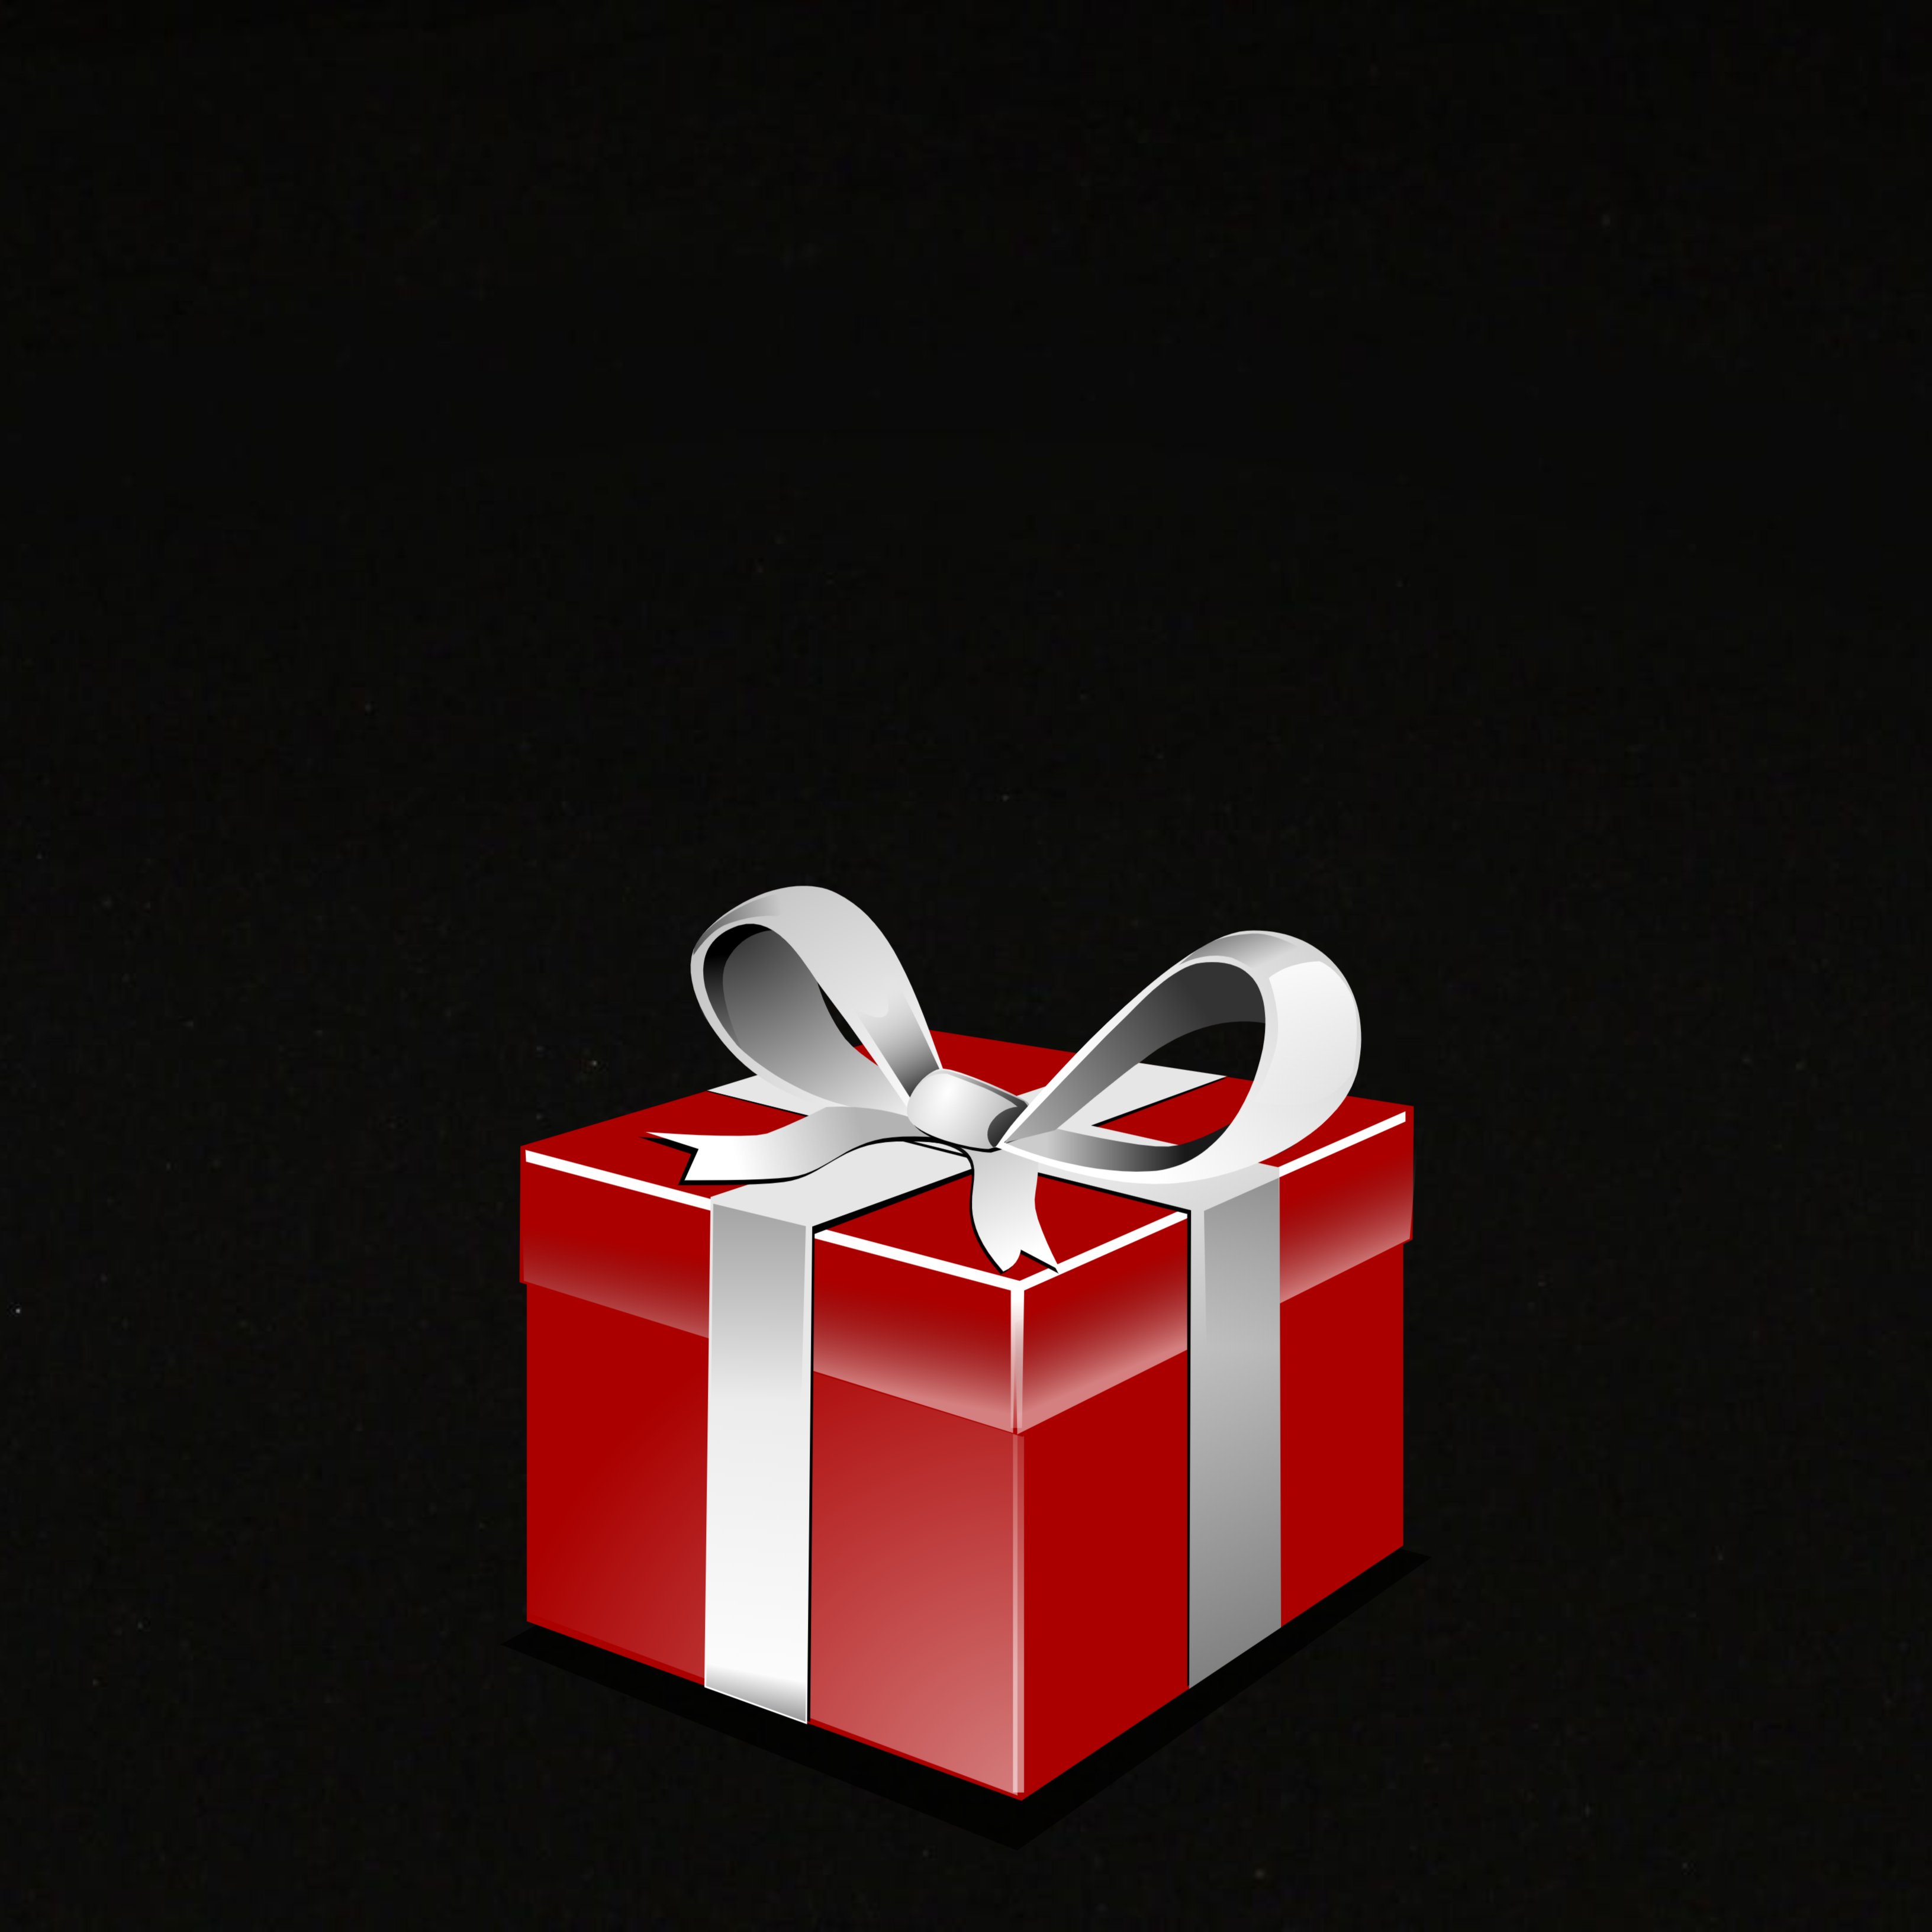 Cinco regalos tecnológicos para el amigo invisible navideño por menos de 20 euros